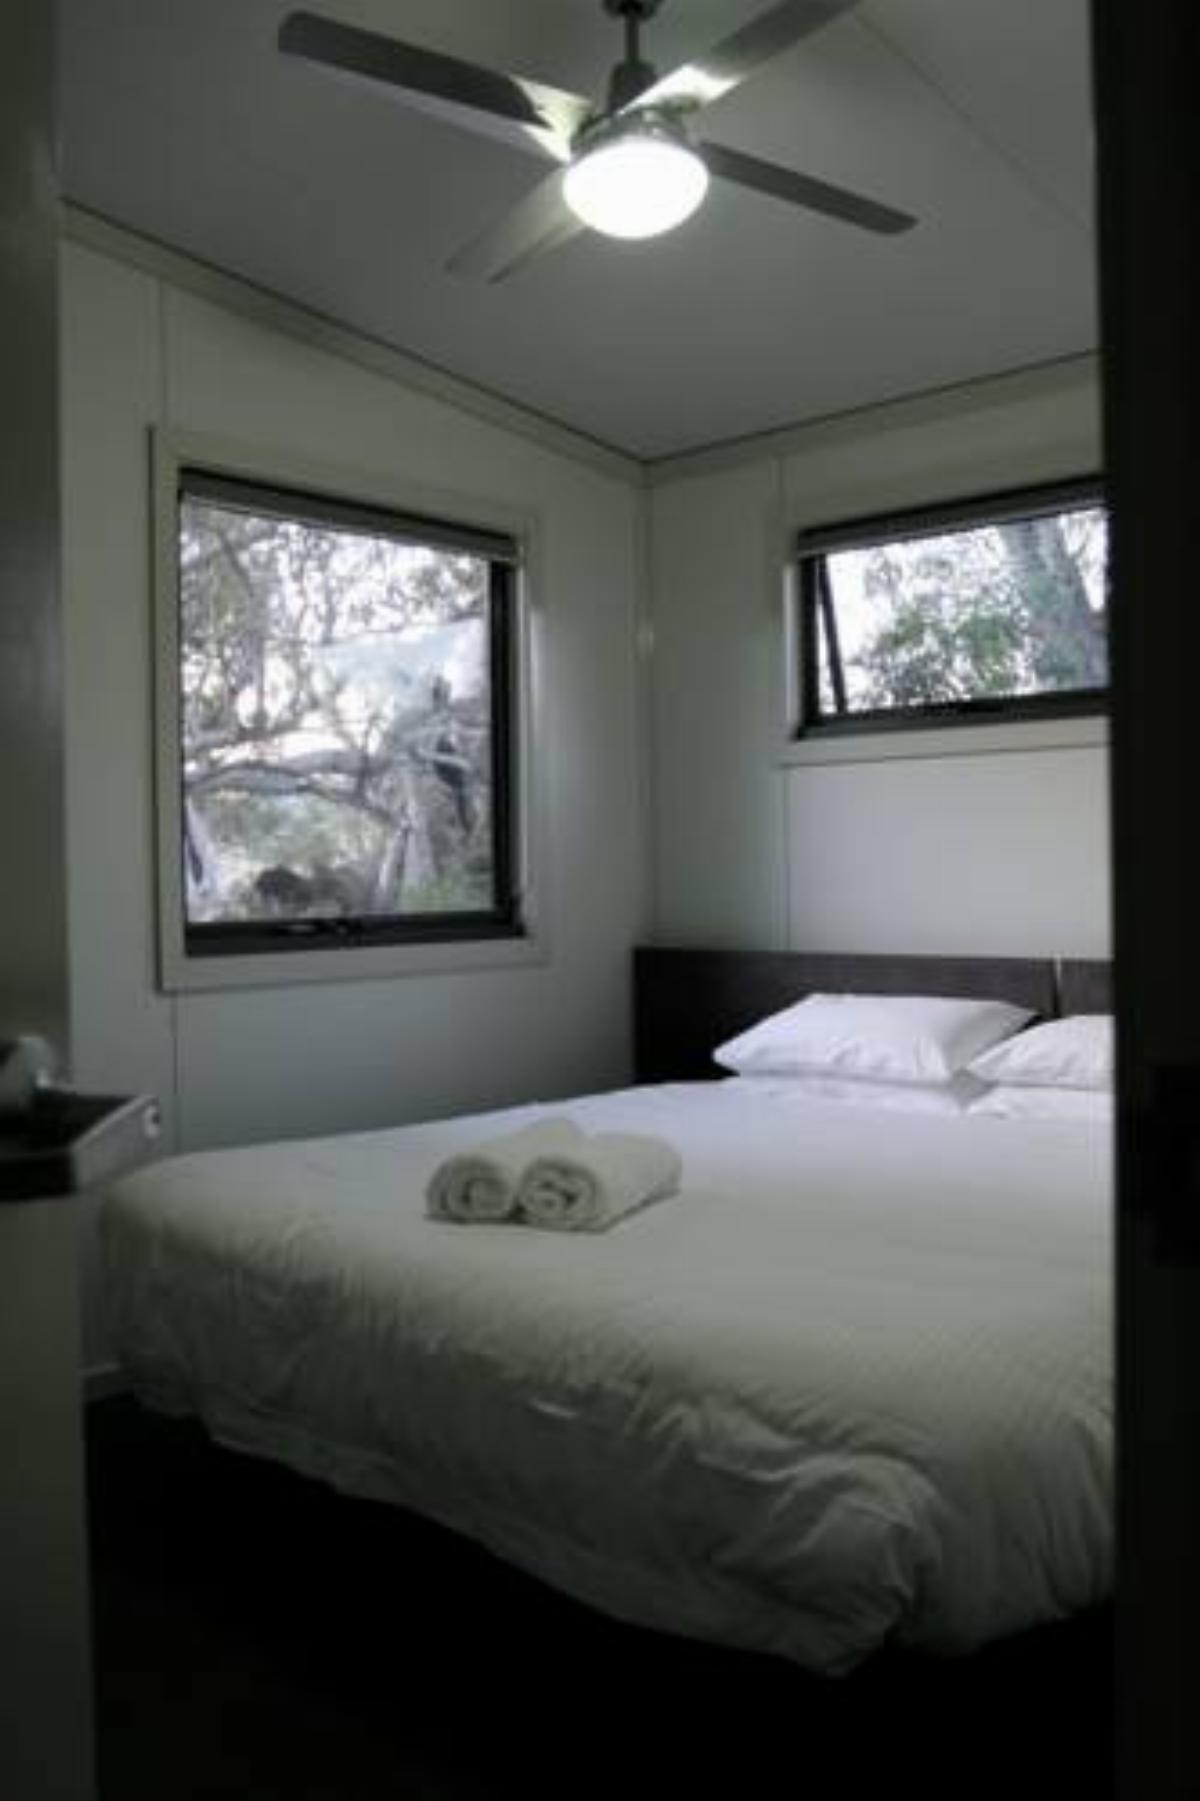 Ecocrackenback 3 'Sustainable, luxurious chalet close to the slopes.' Hotel Crackenback Australia